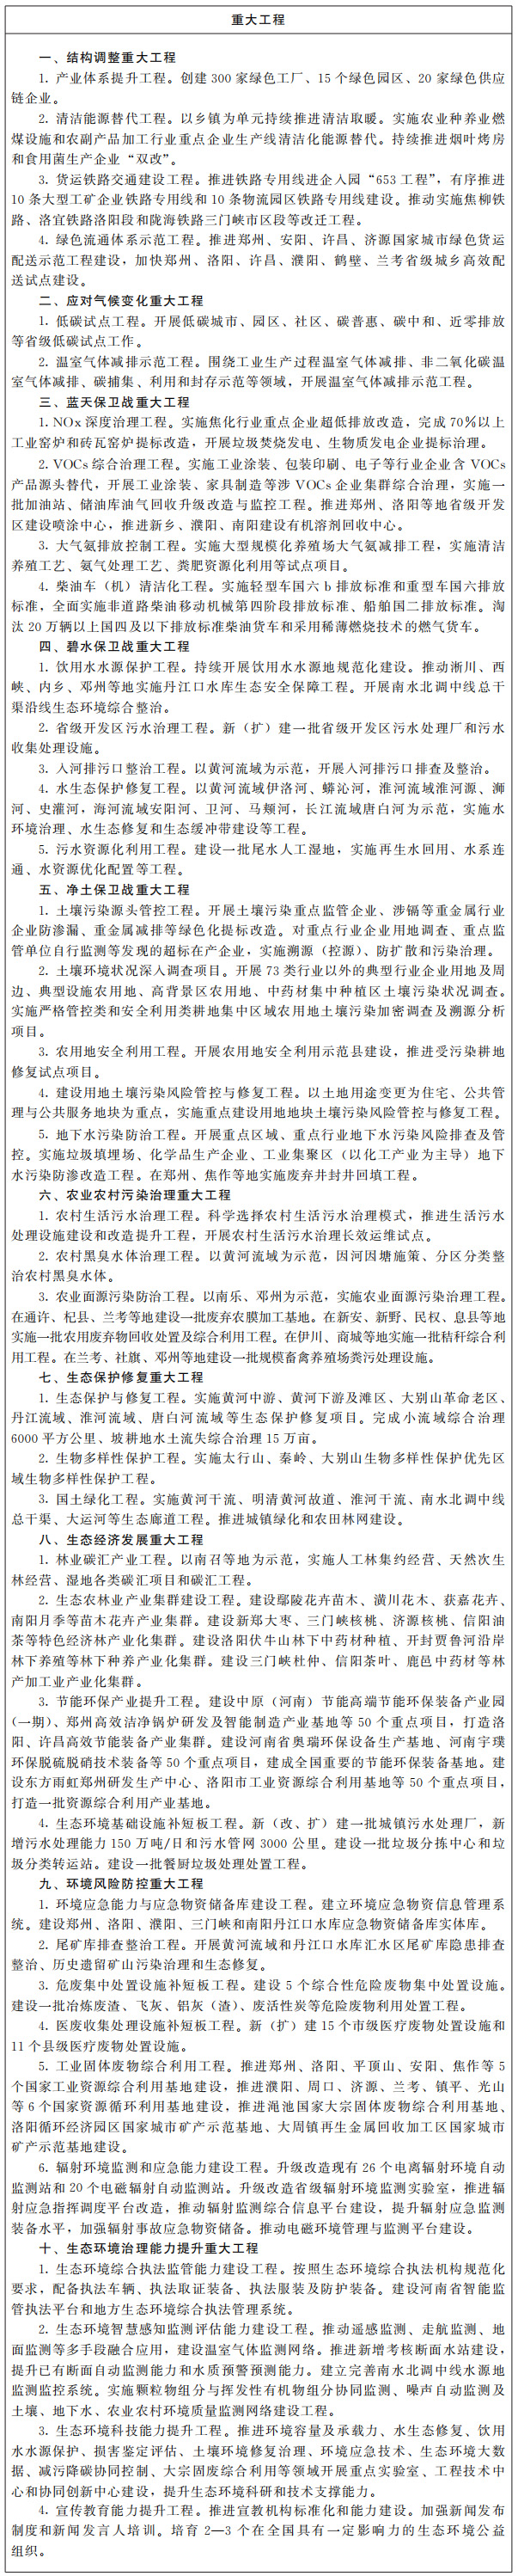 河南省人民政府关于印发河南省“十四五”生态环境保护和生态经济发展规划的通知